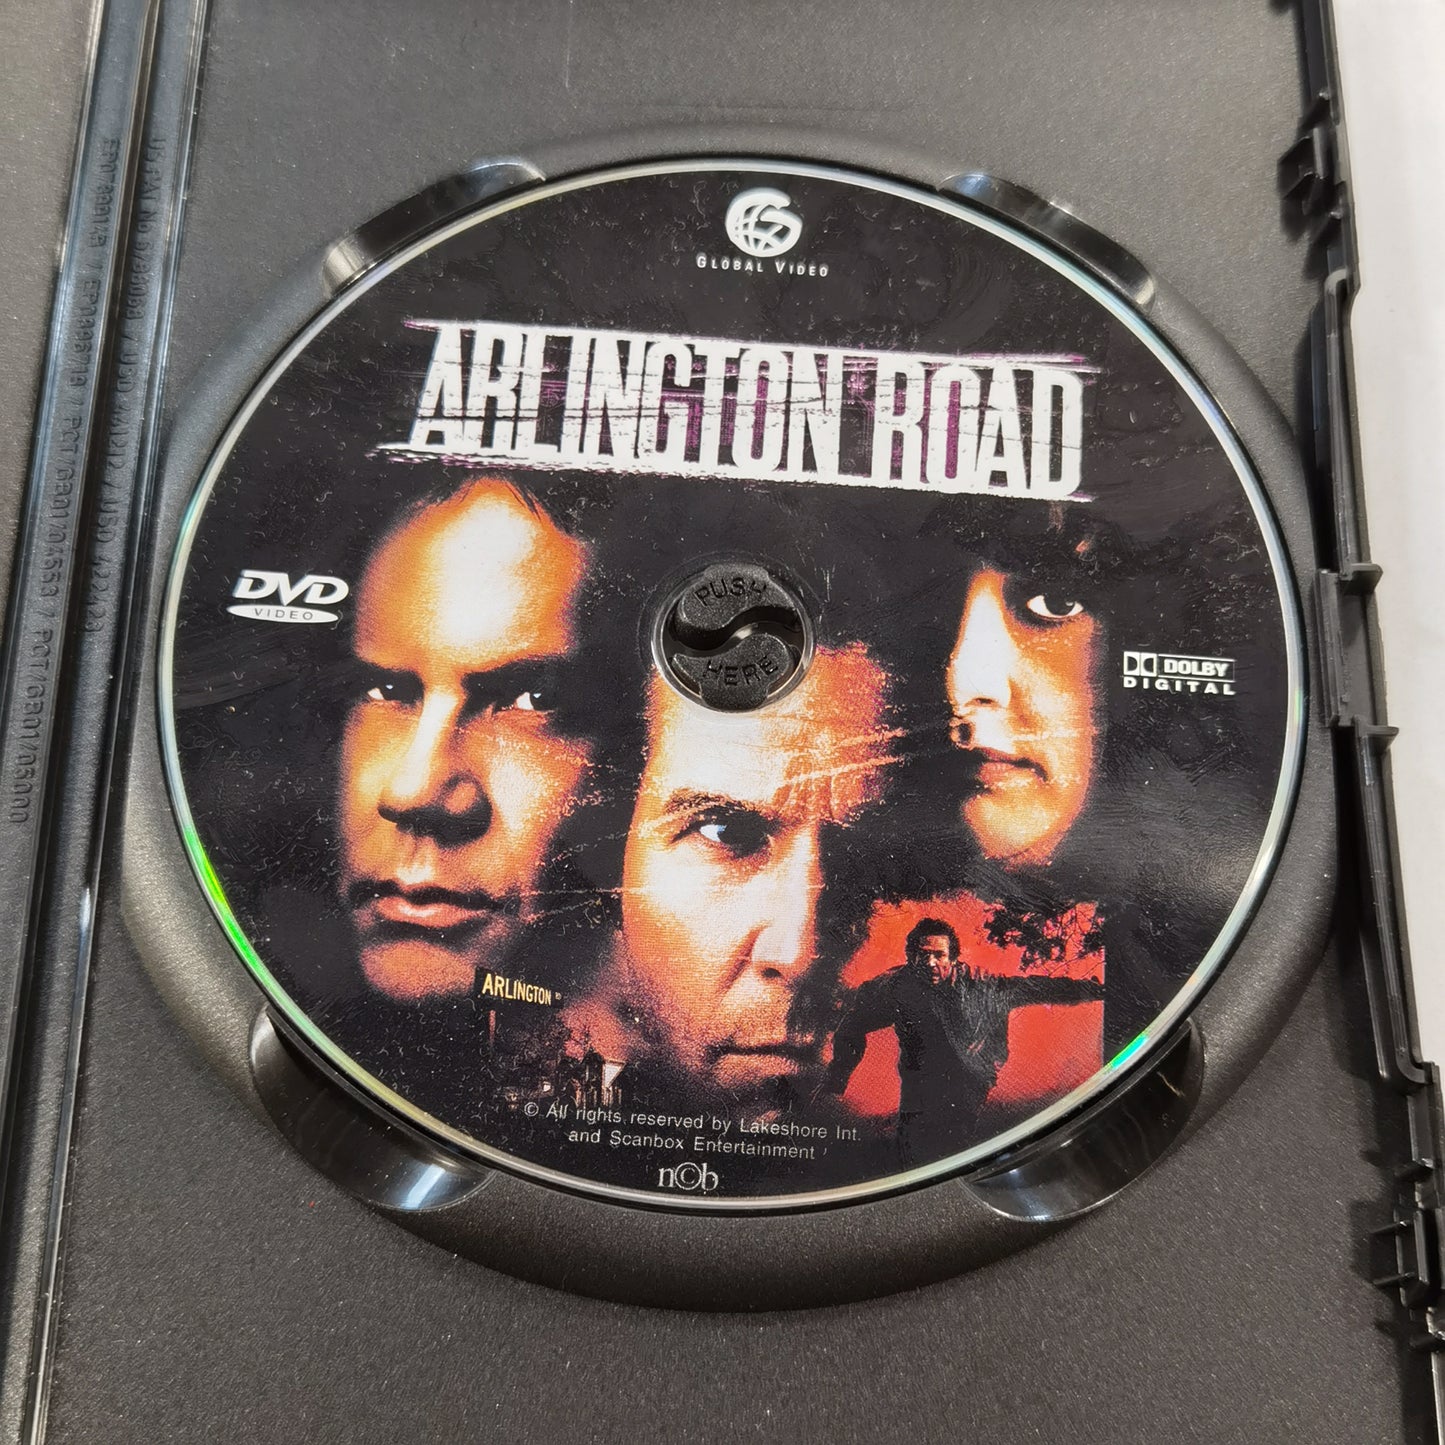 Arlington Road (1999) - DVD SE NO DK FI